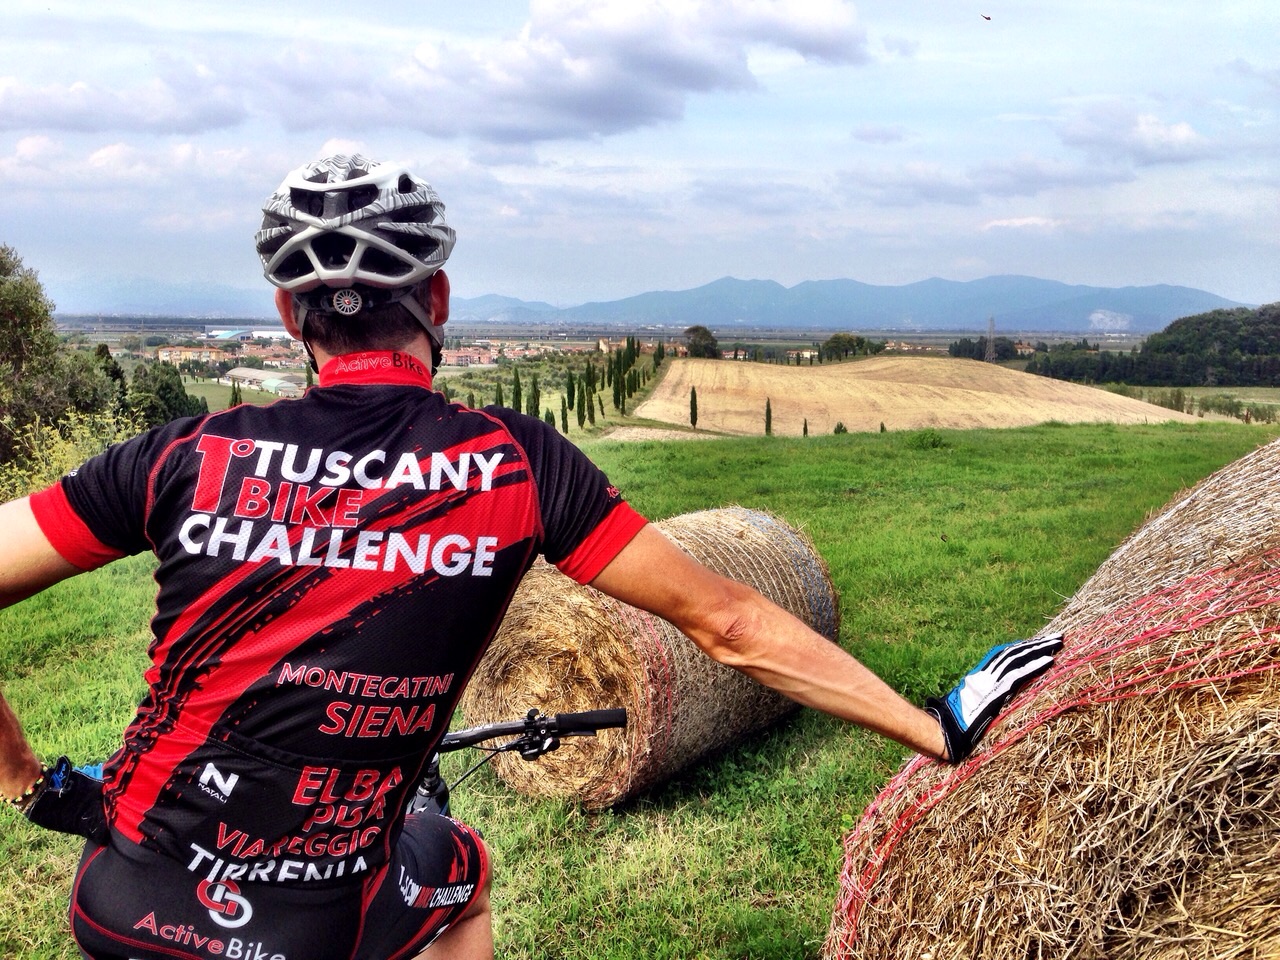 Tuscany Bike Challenge